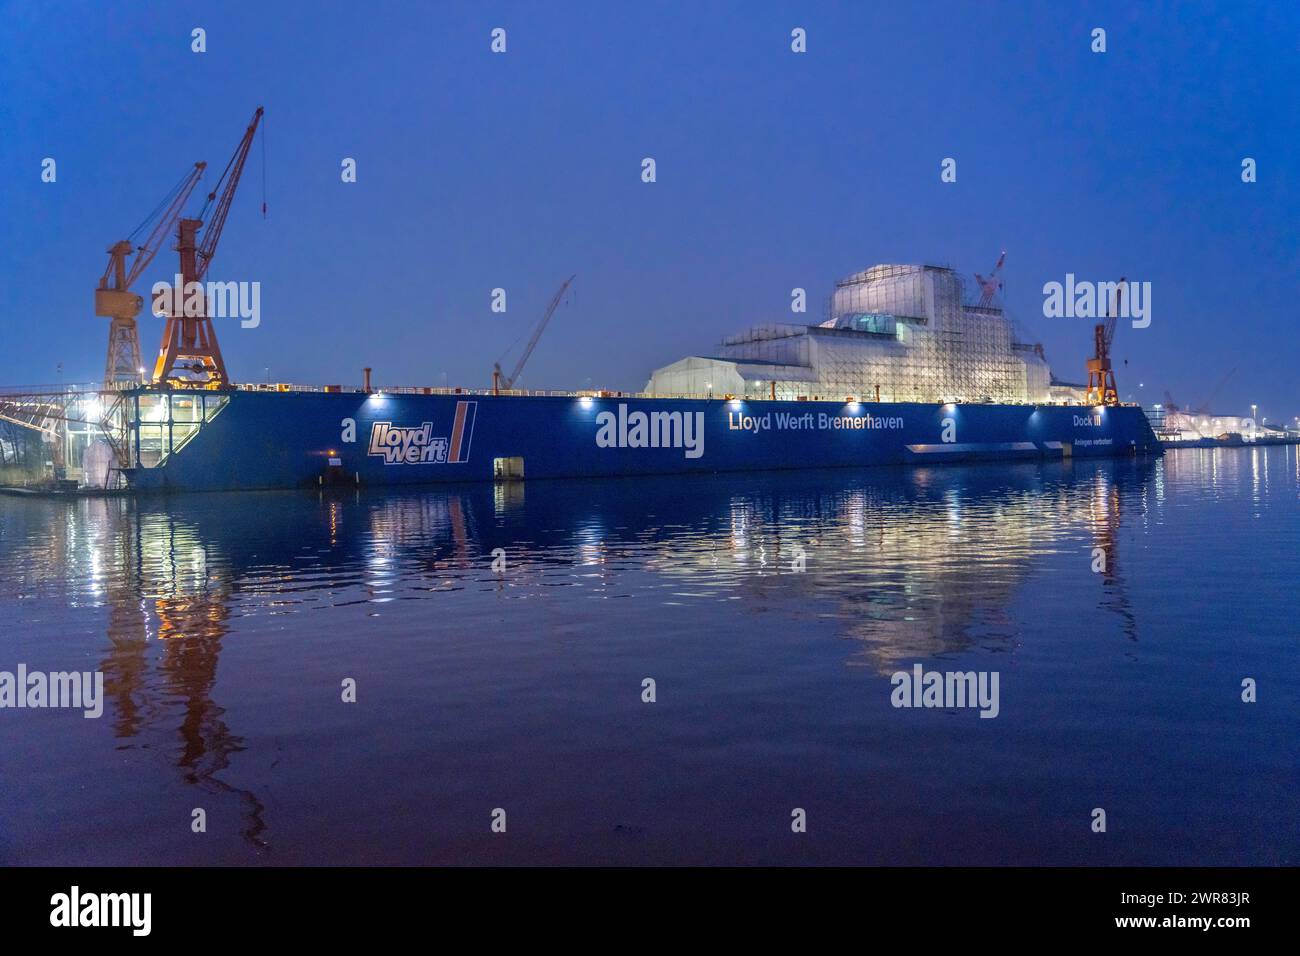 Lloyd Werft Bremerhaven nel porto d'oltremare di Bremerhaven, bassa Sassonia, Germania Foto Stock